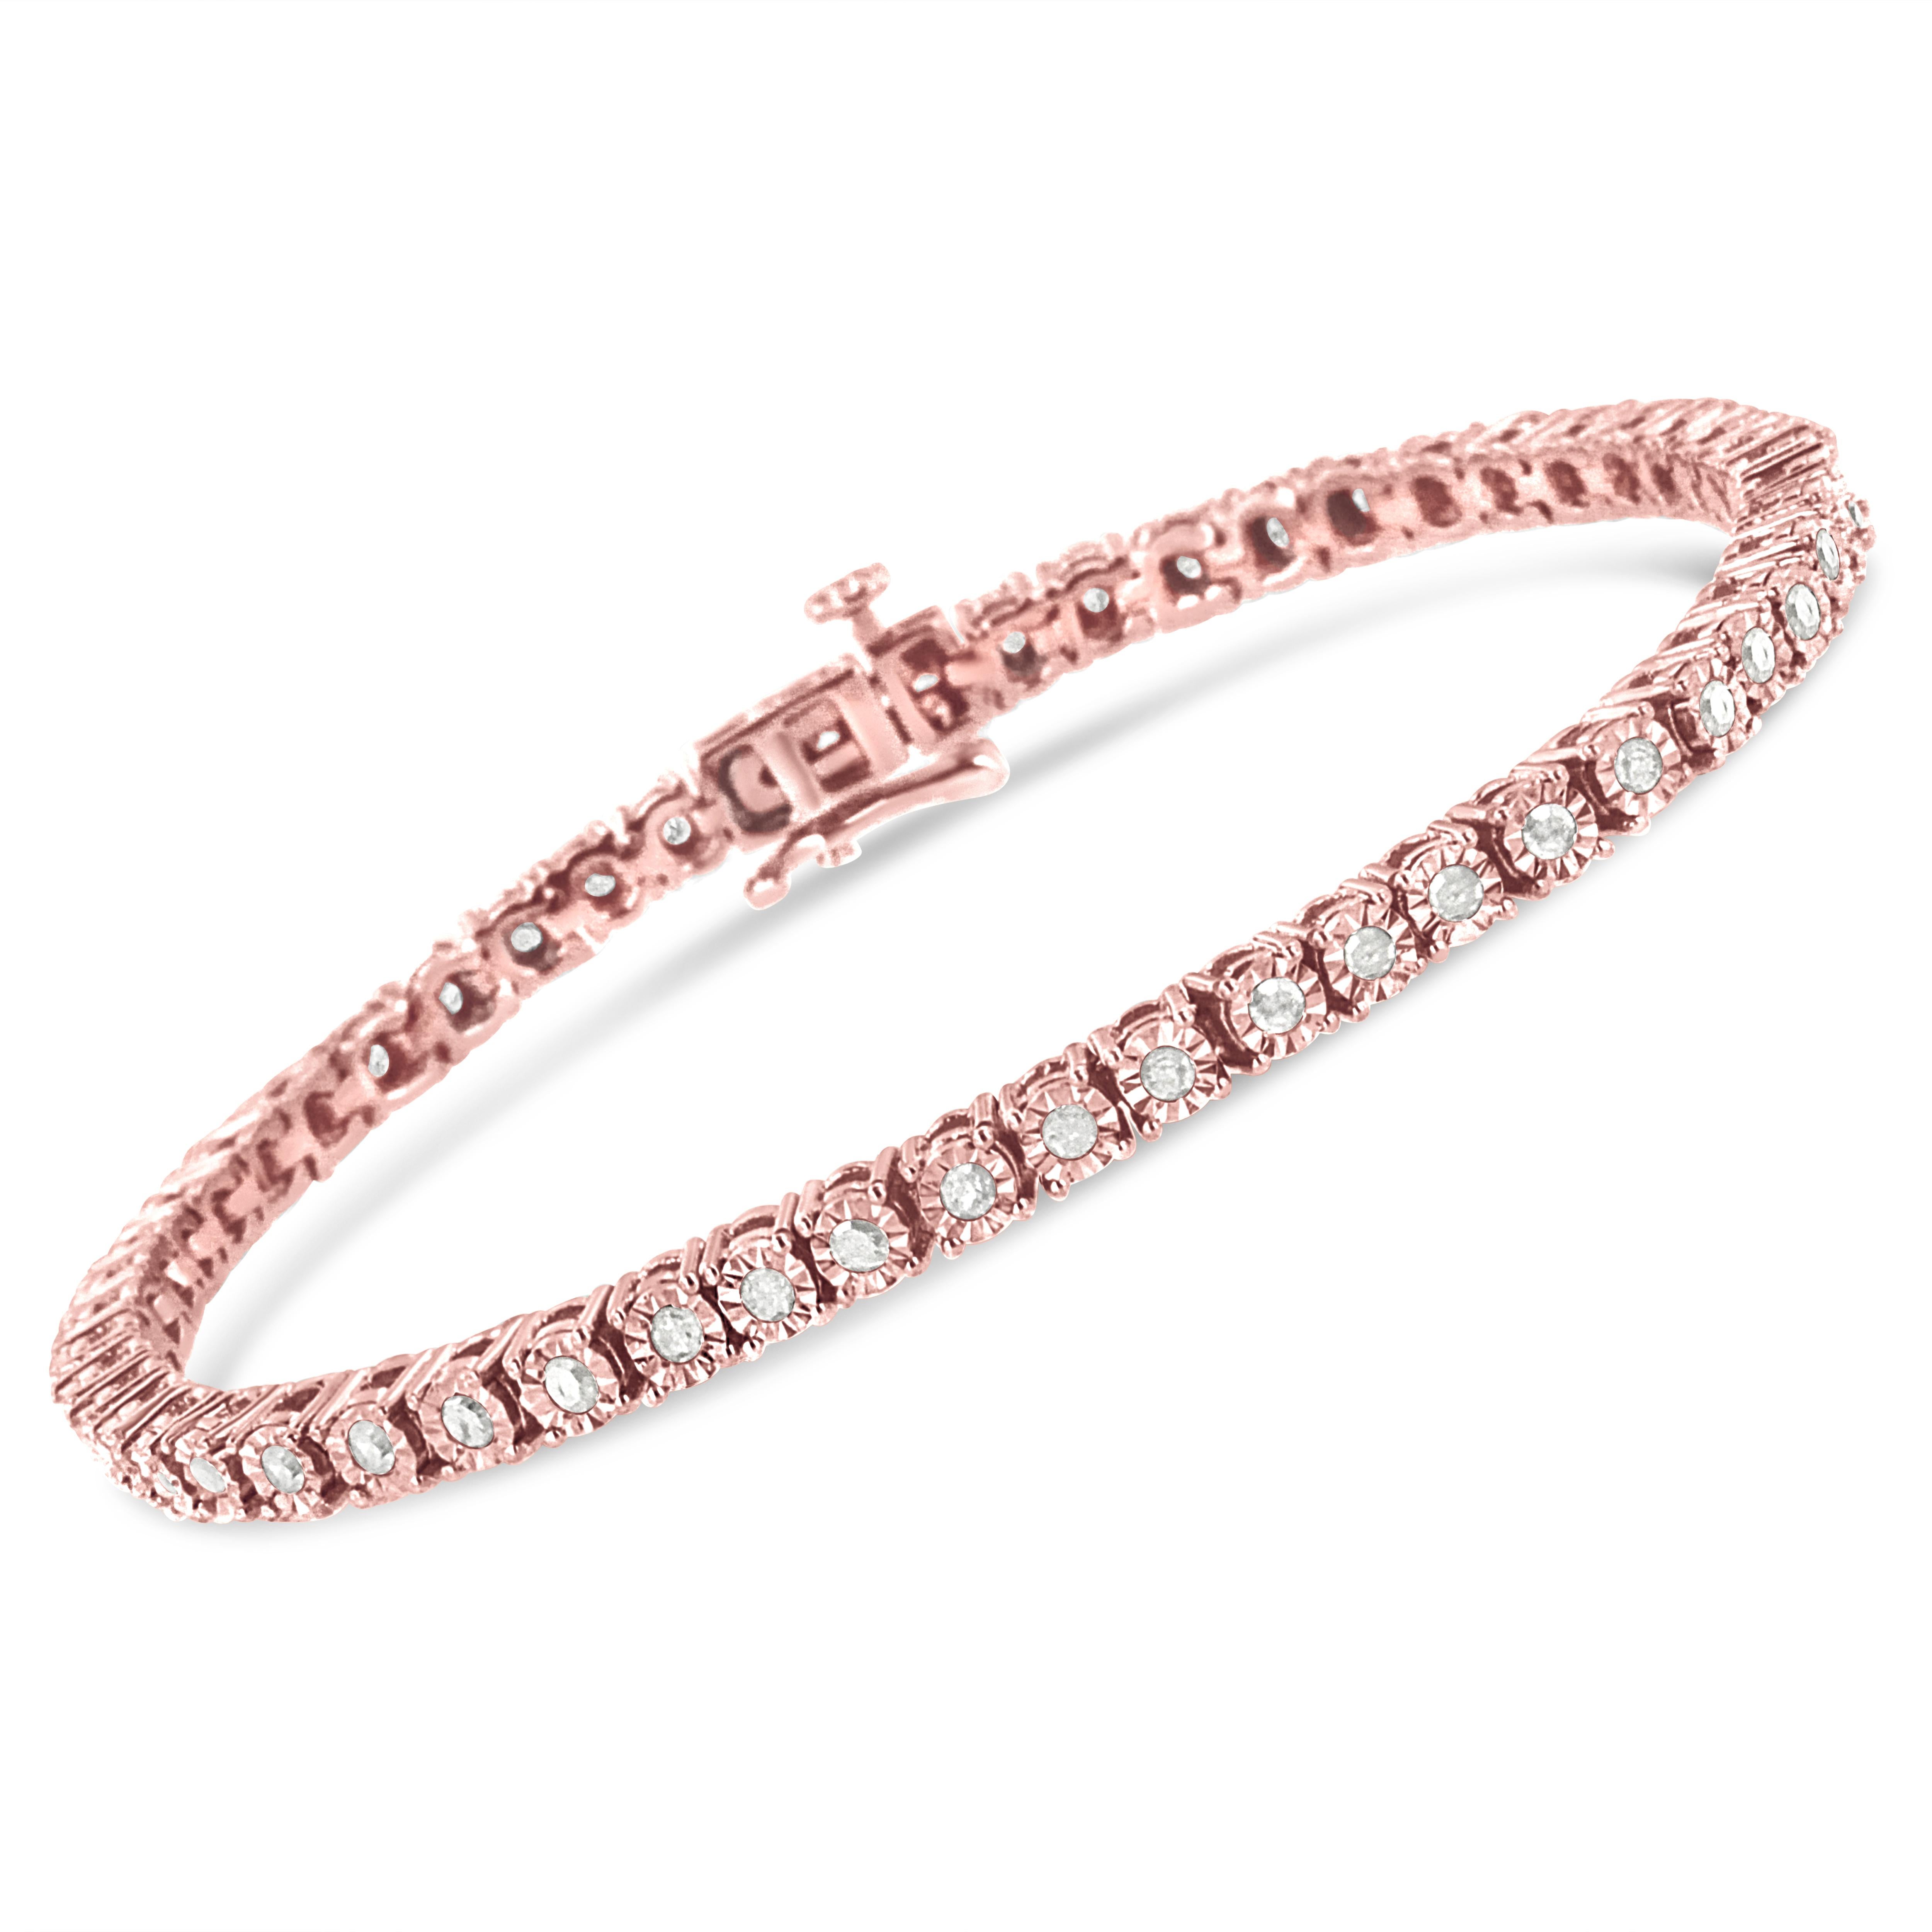 Ce bracelet tennis féminin et luxueux est composé des plus beaux diamants taillés en rose à multiples facettes, qui rappellent le style Art déco des bijoux de l'époque. Montés sur des maillons en argent sterling véritable et massif (925) pour un